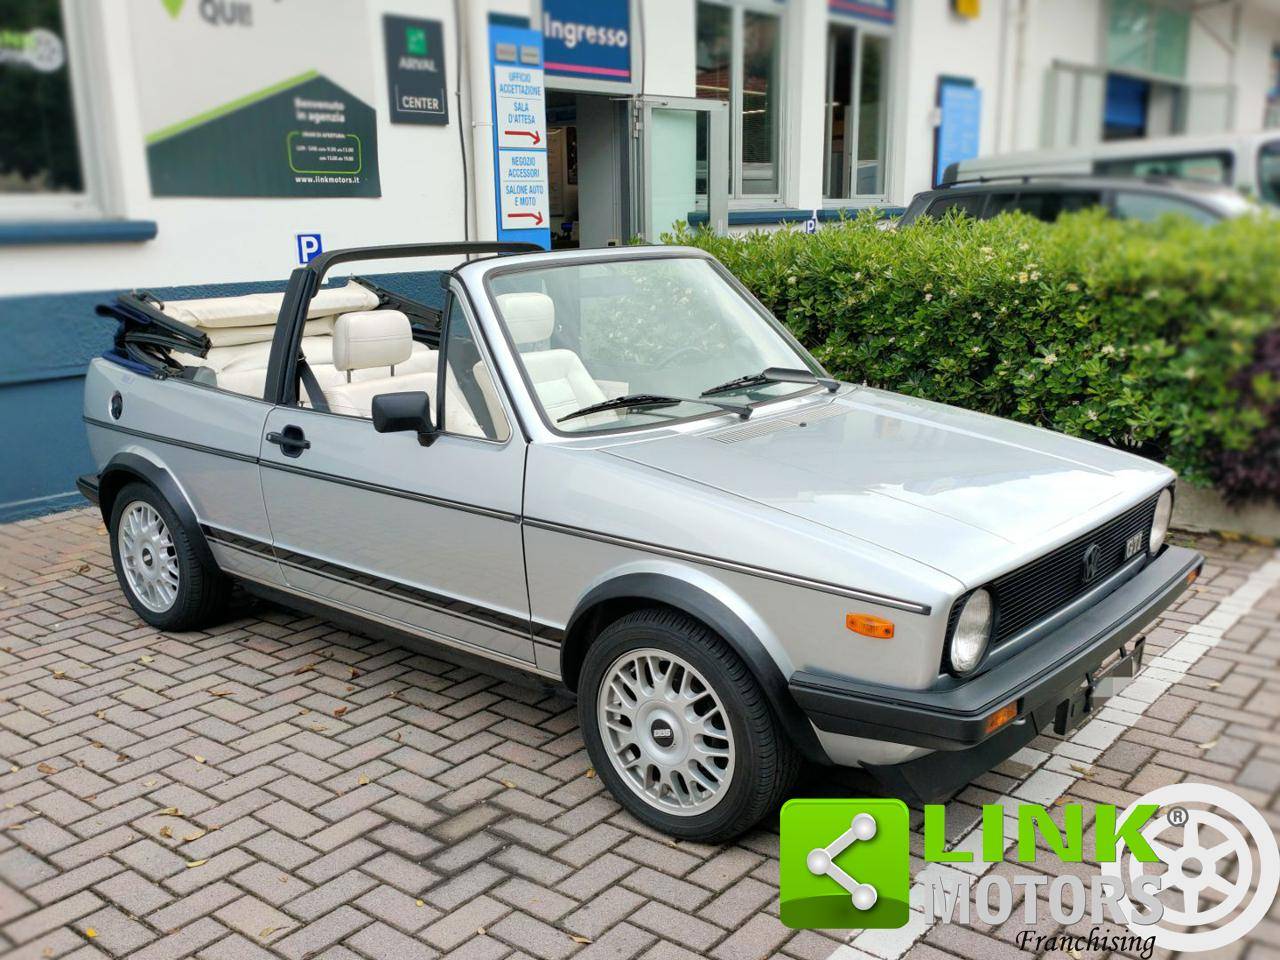 For Sale: Volkswagen Golf I Cabrio GLi 1.6 (1981) offered for €11,800